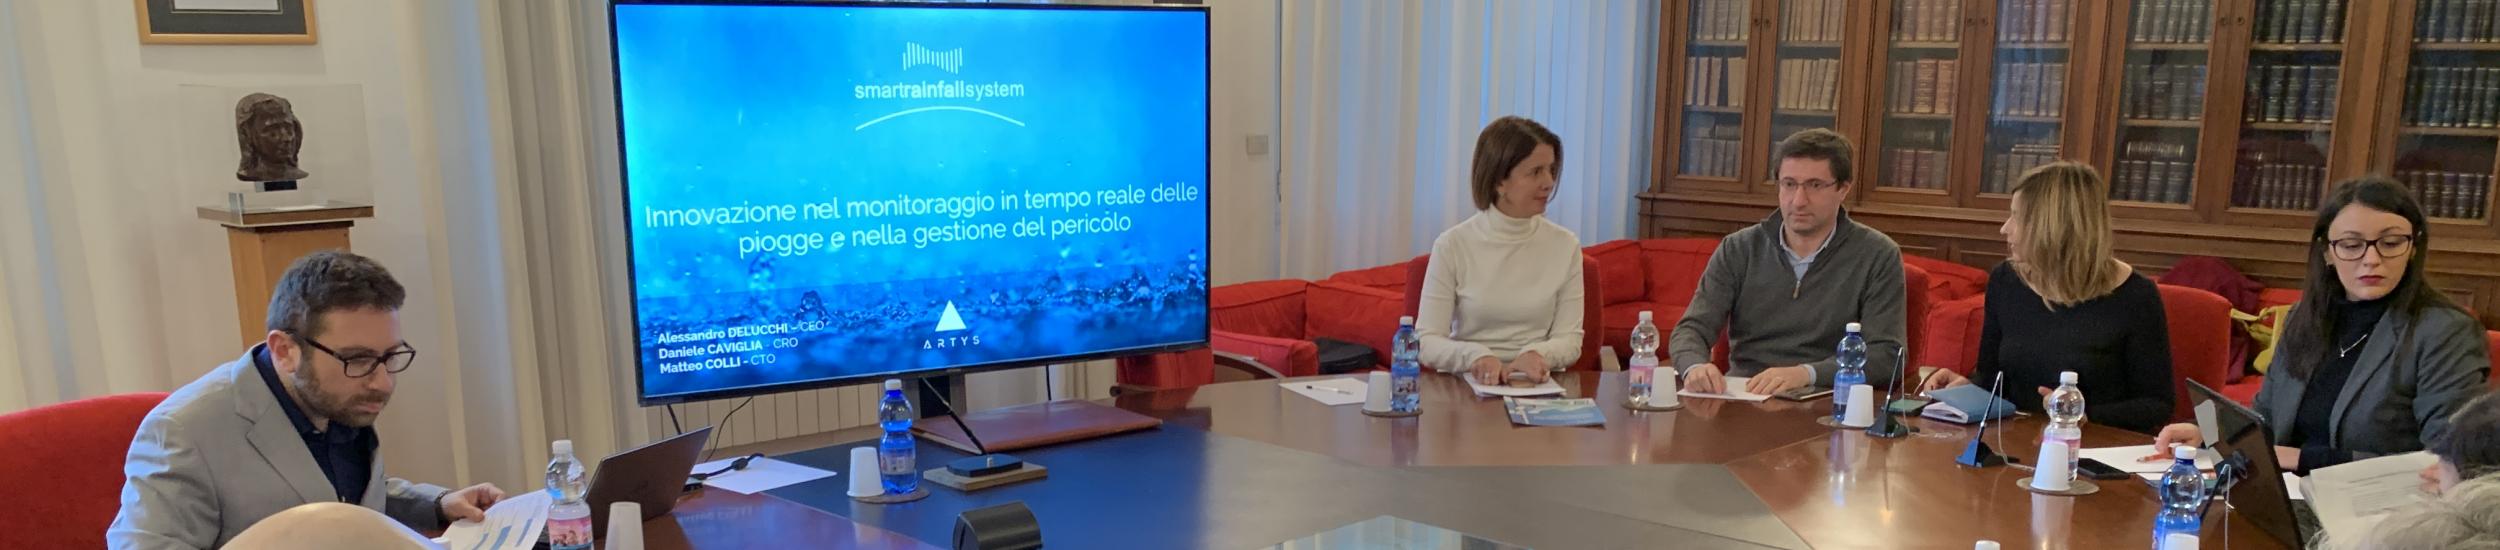 Progetto SMARTRAINFALLSYSTEM: @GenovaMetropoli e Val Polcevera valutano sistemi per monitorare il rischio idrogeologico